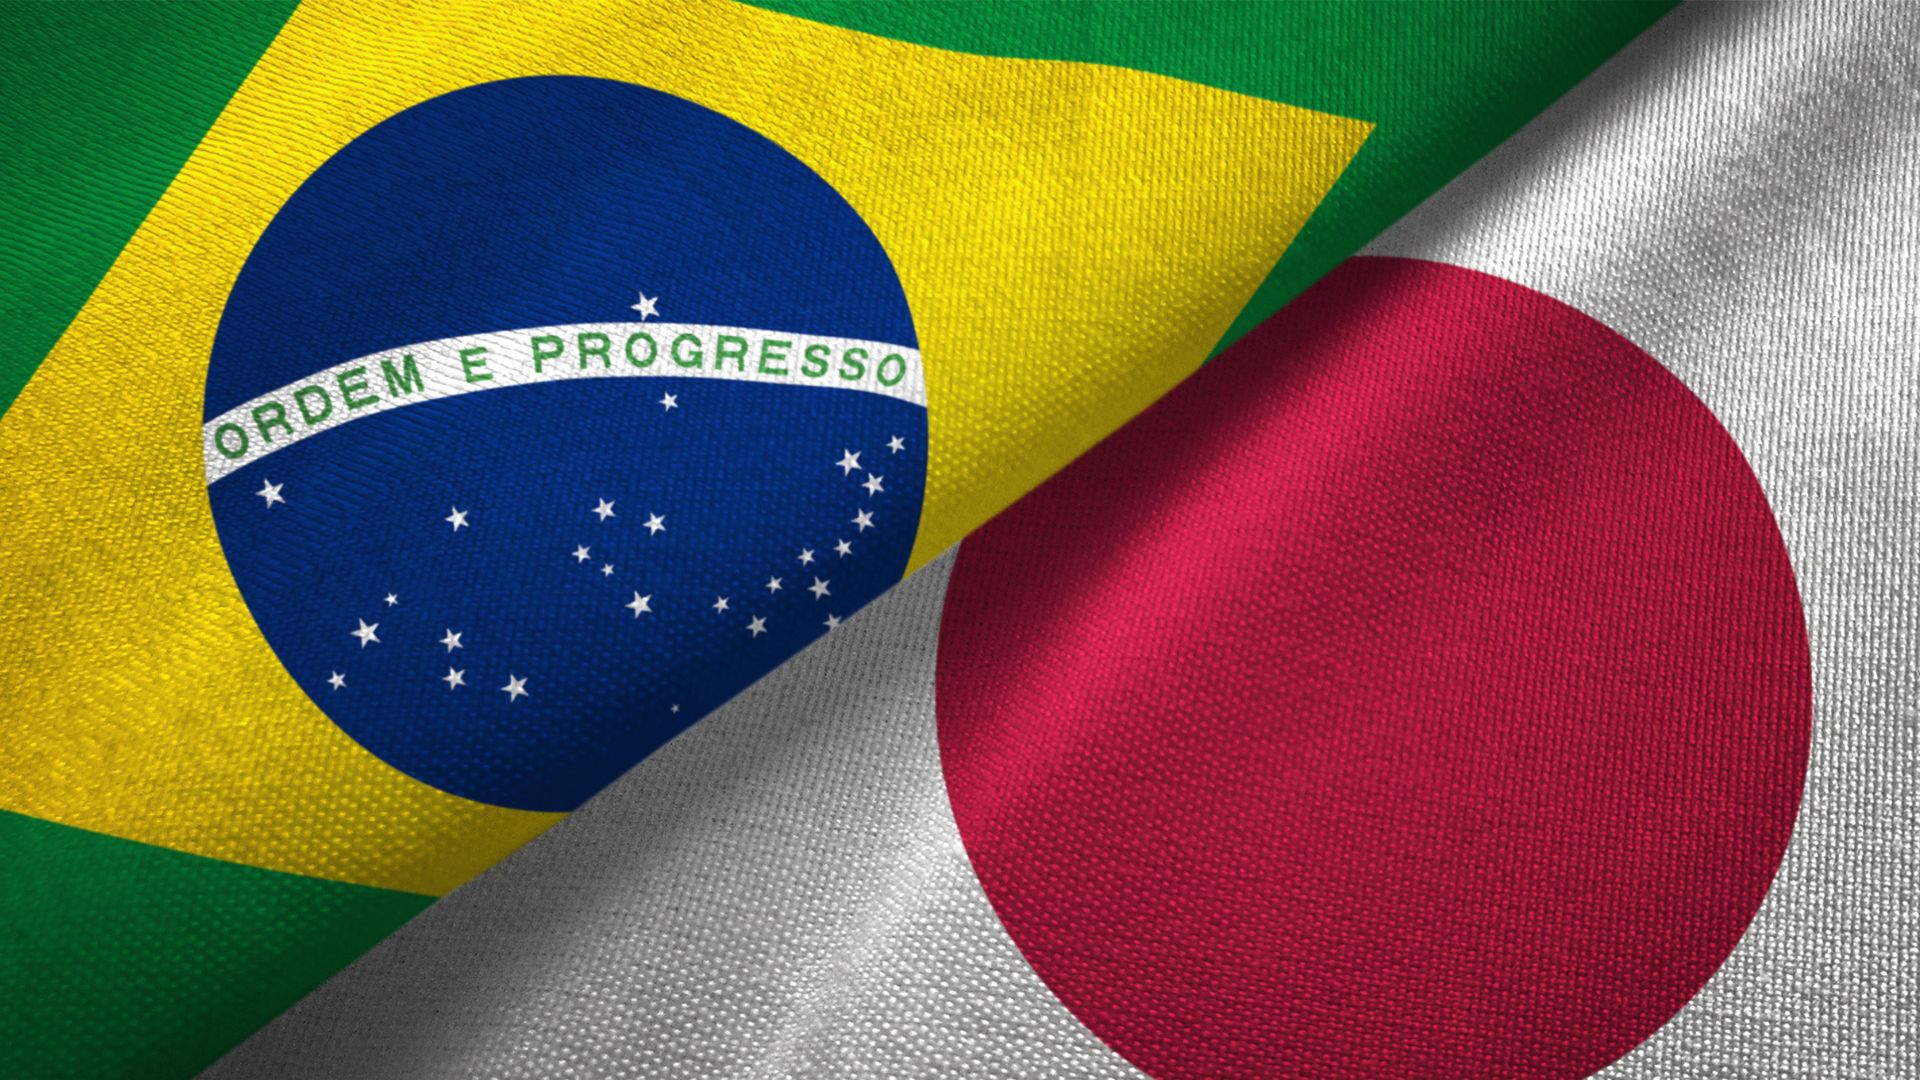 Imagem com a bandeira do Japão e do Brasil